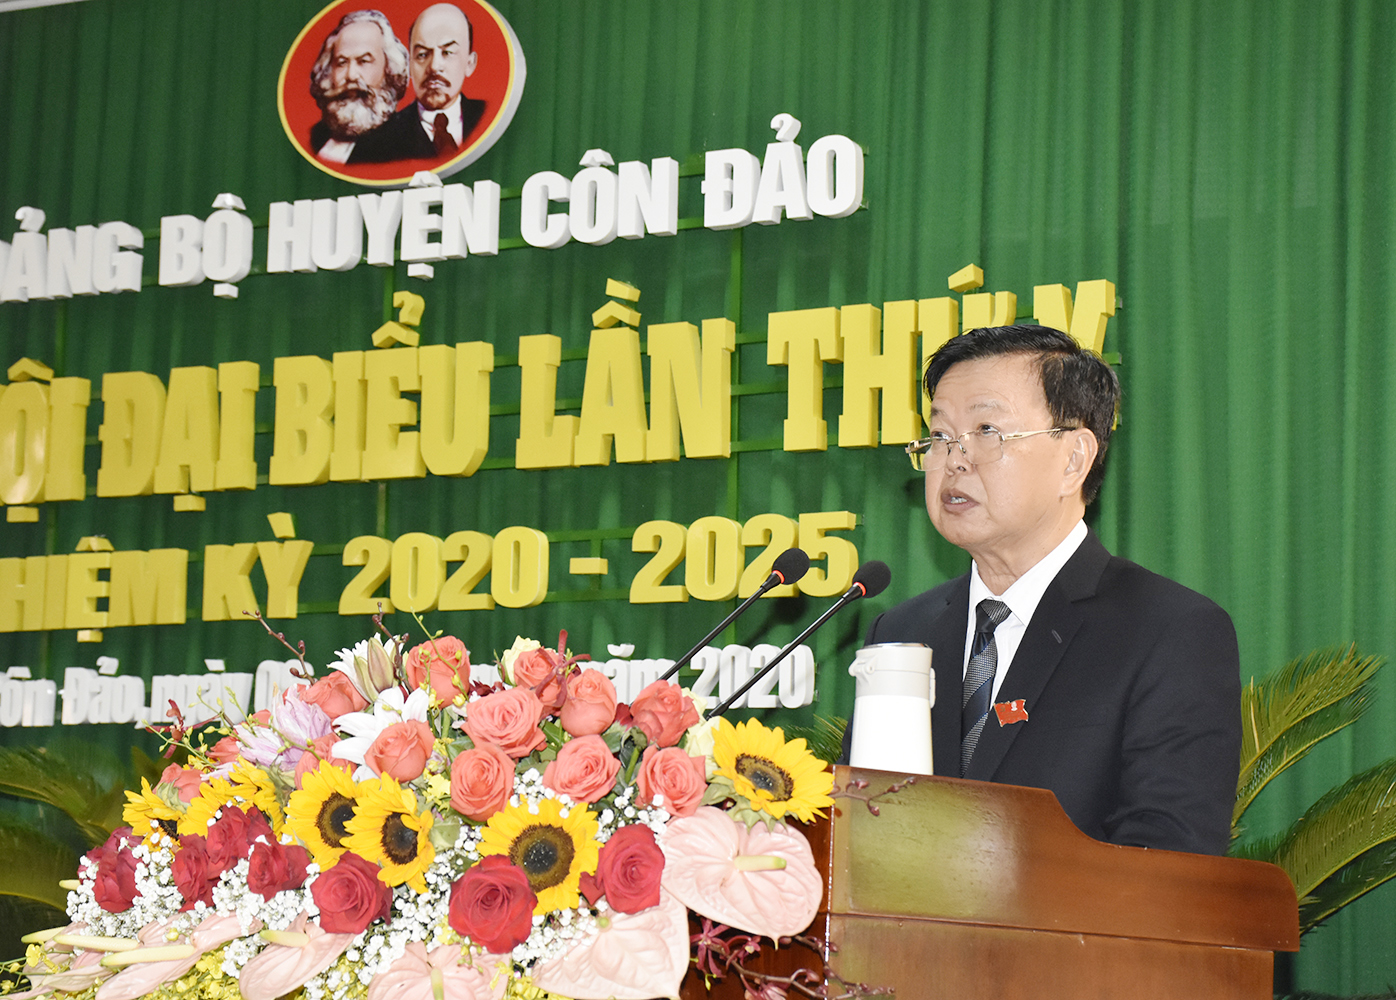 Đồng chí Nguyễn Hoàng Tùng, Phó Bí thư Huyện ủy Côn Đảo trình bày Báo cáo chính trị.